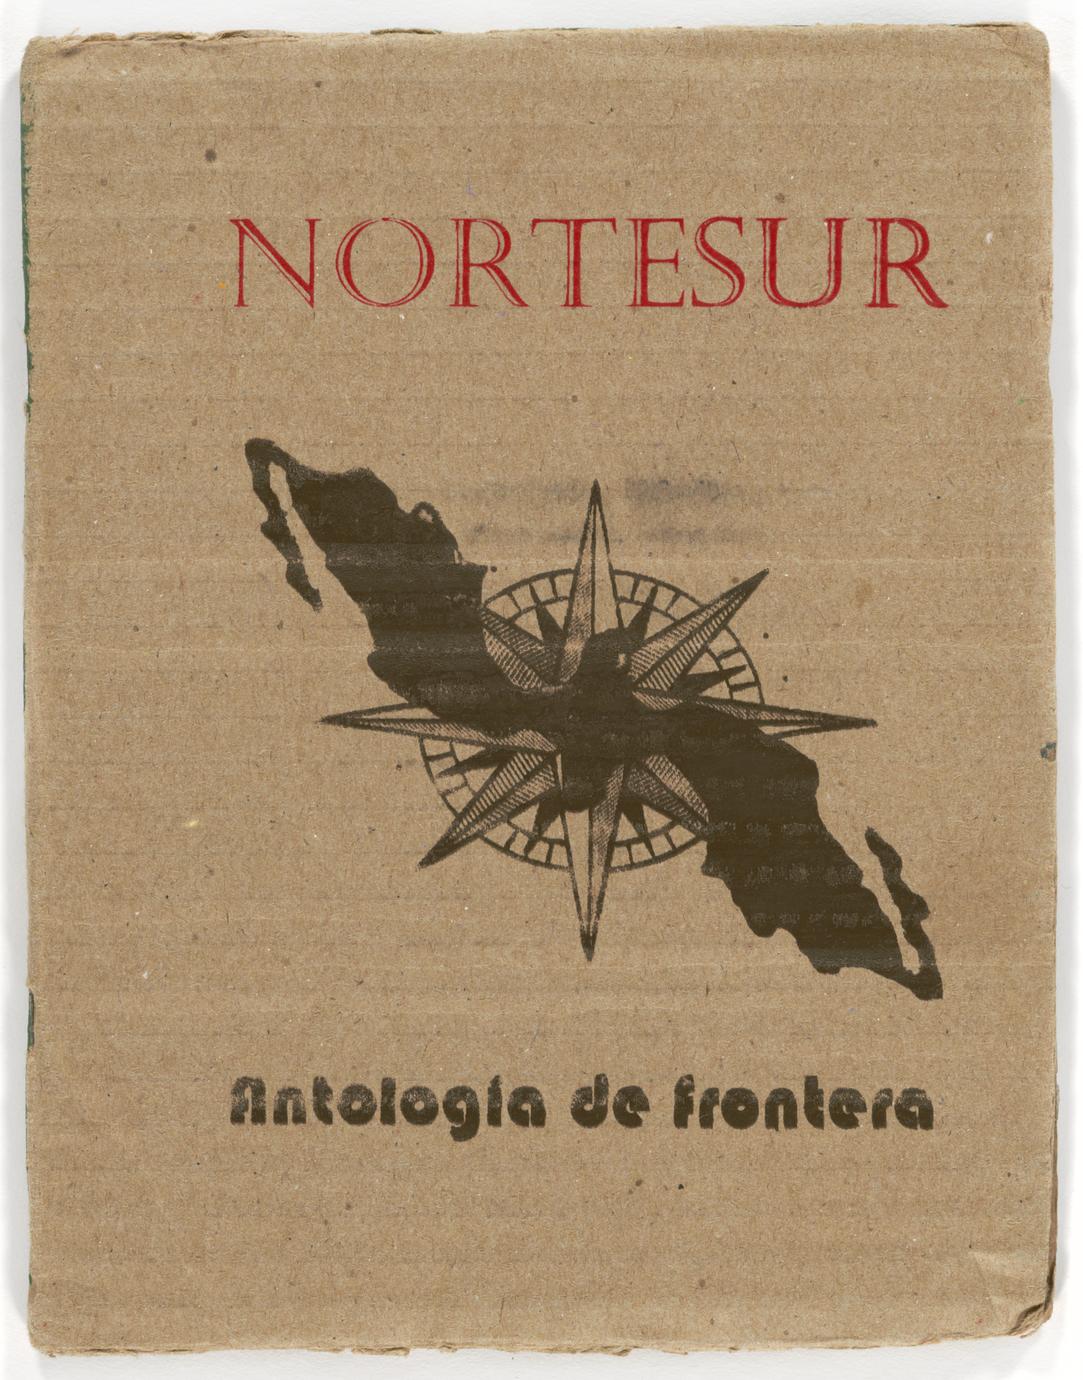 Norte/Sur : antología de frontera (1 of 3)